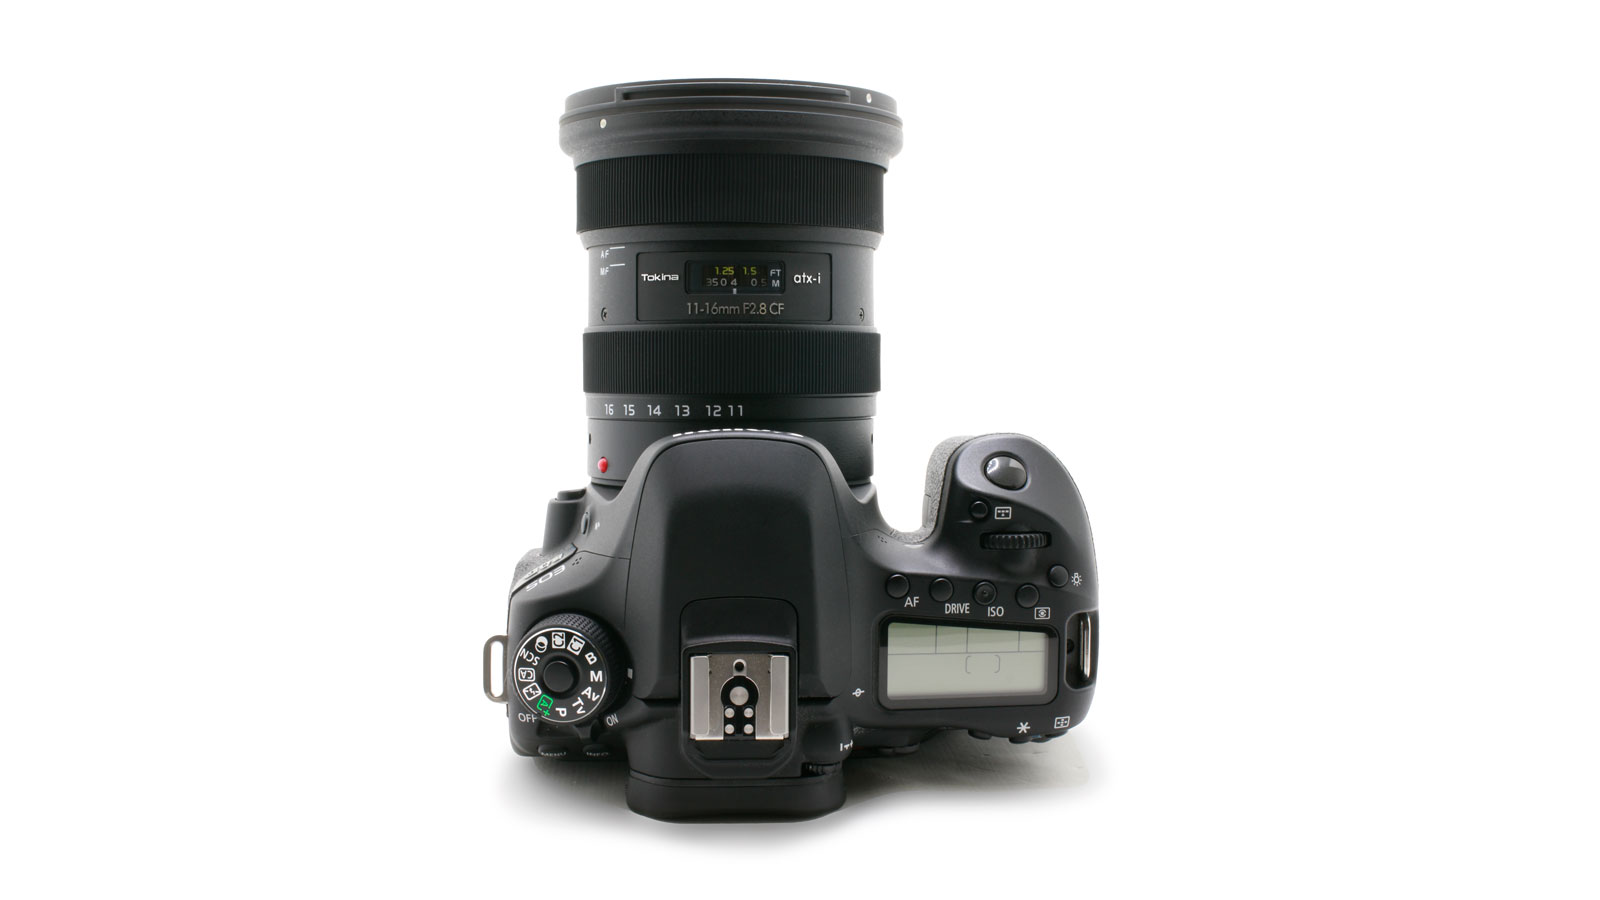 Tokina ra mắt ống kính atx-i 11-16mm f/2.8 CF cho Canon EF-S và Nikon F